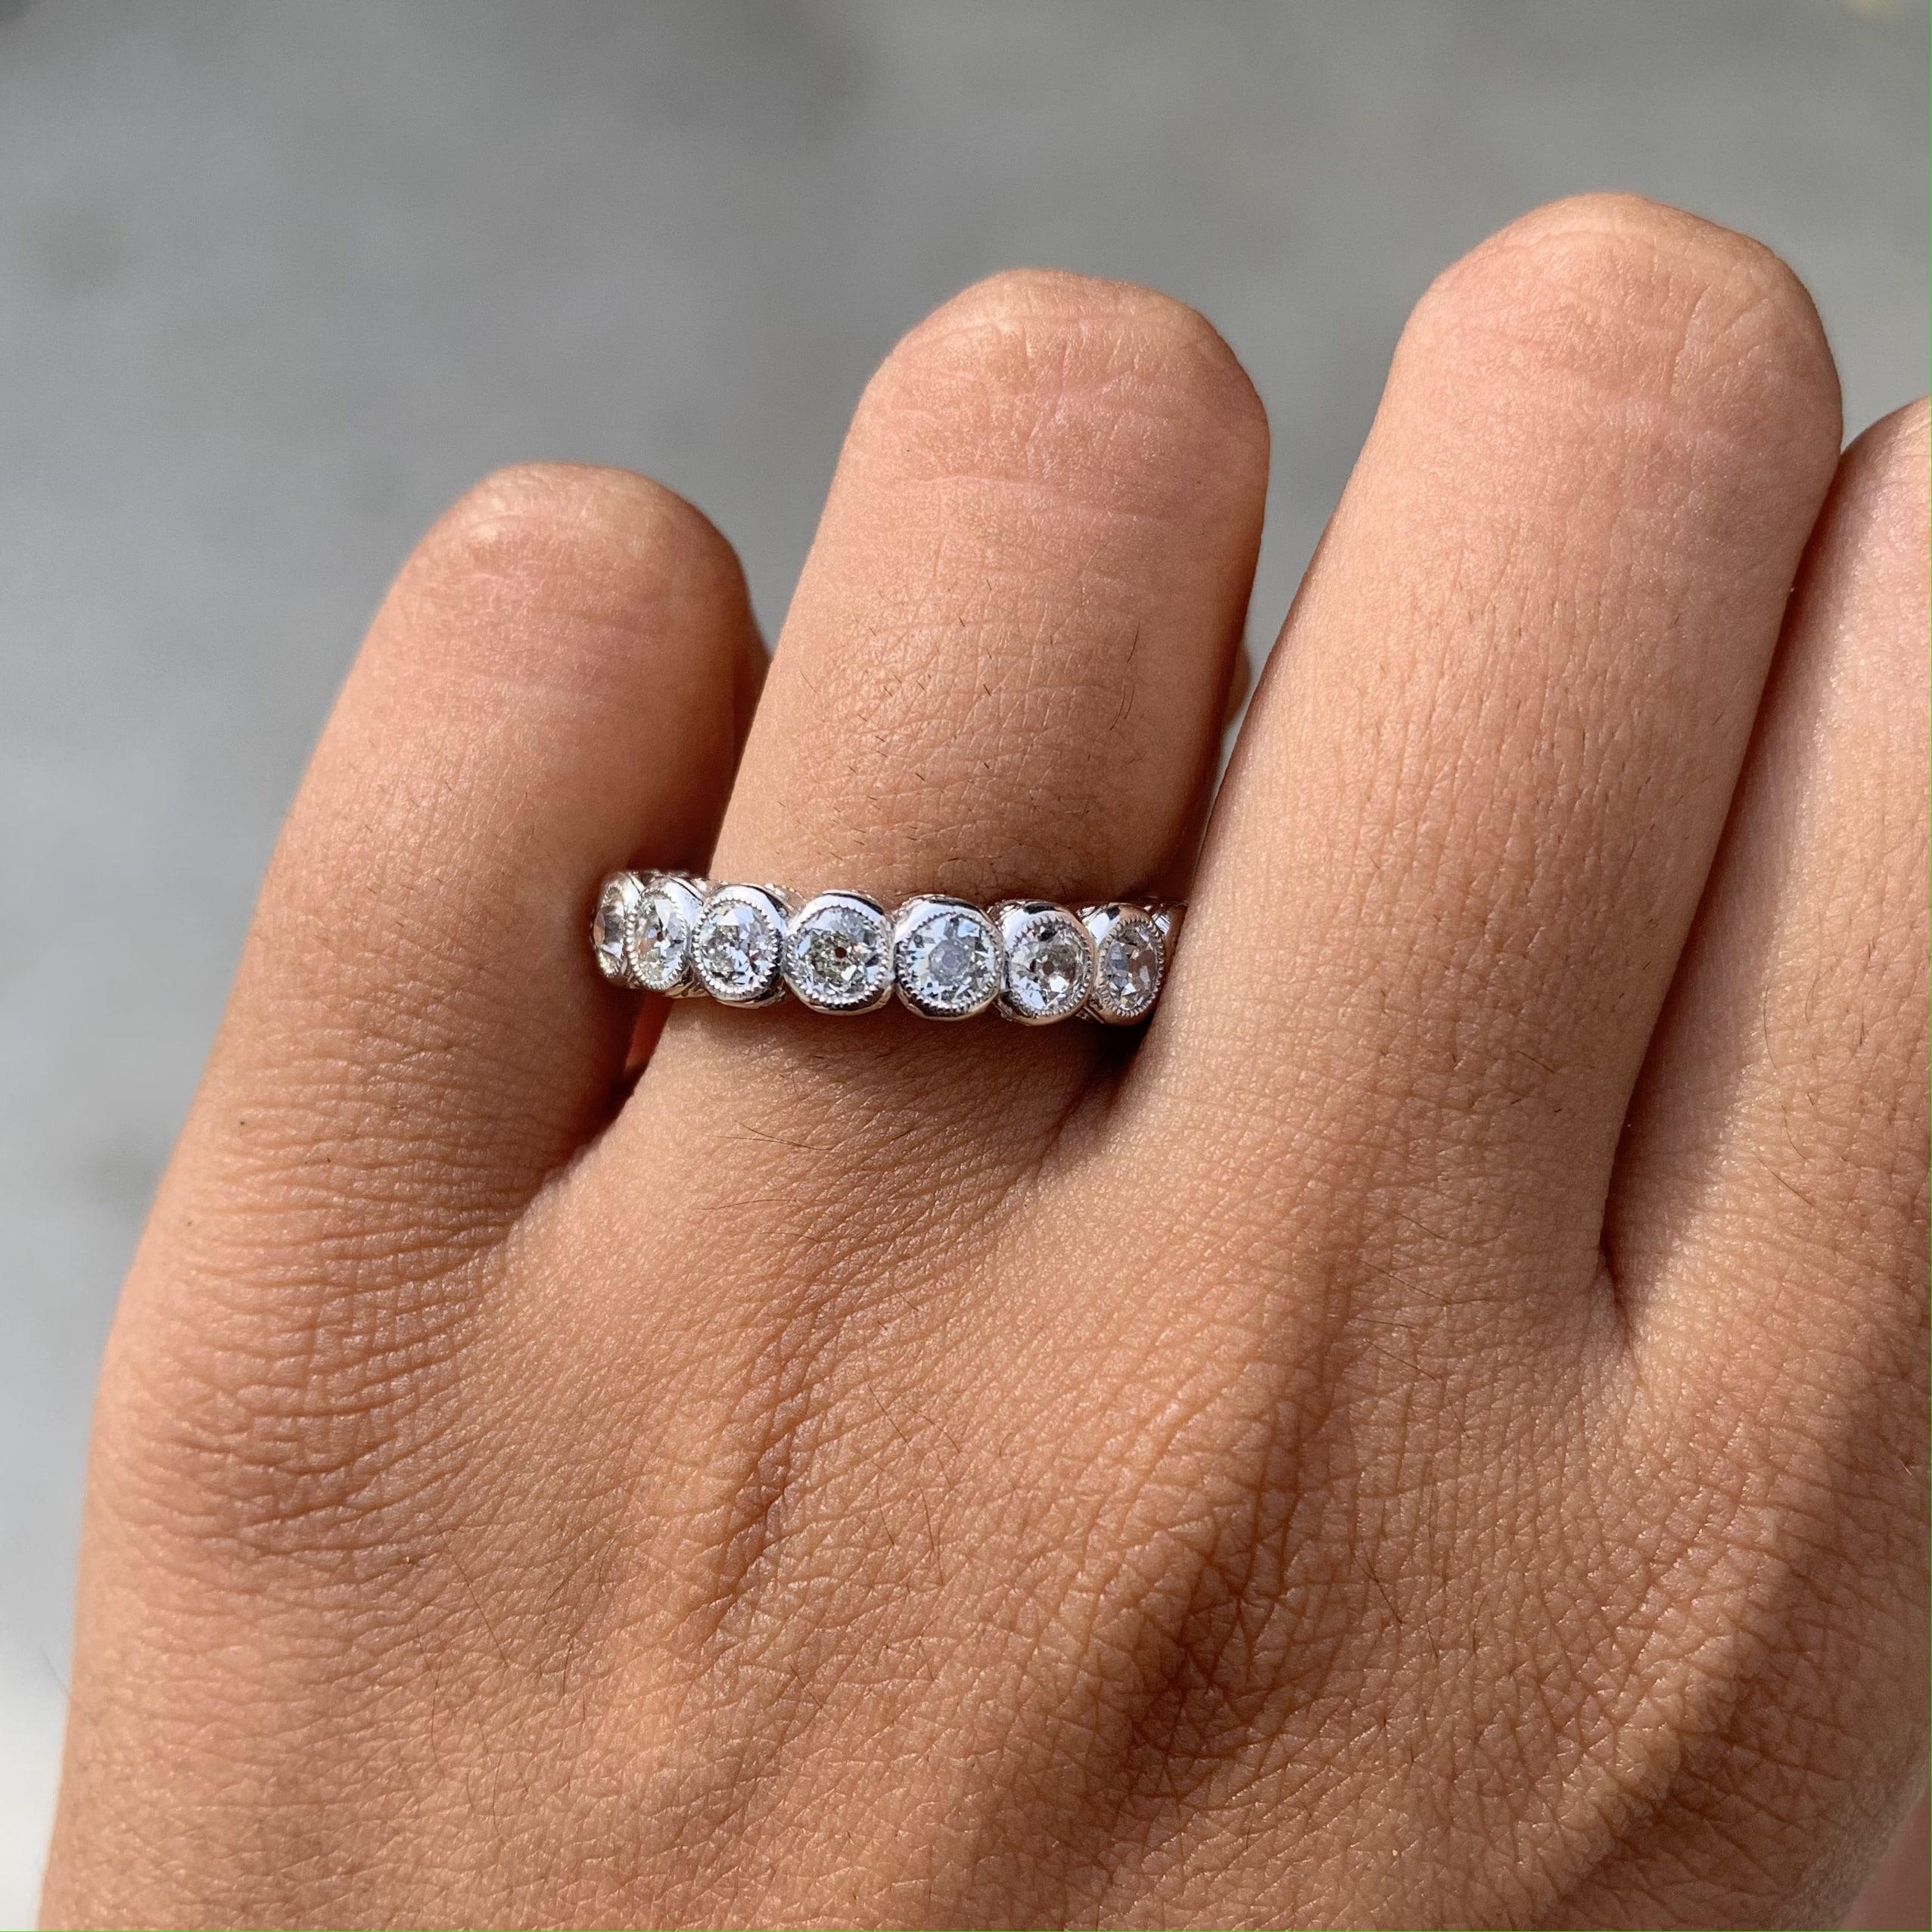 Der absolut verträumte und unvergängliche 2,48-Karat-Diamantring im Minenschliff.  Ein idealer Ring für einen Heiratsantrag mit diesem faszinierenden Vintage-Diamantring! Wenn Sie sich selbst ein Geschenk machen wollen, ist dies der perfekte